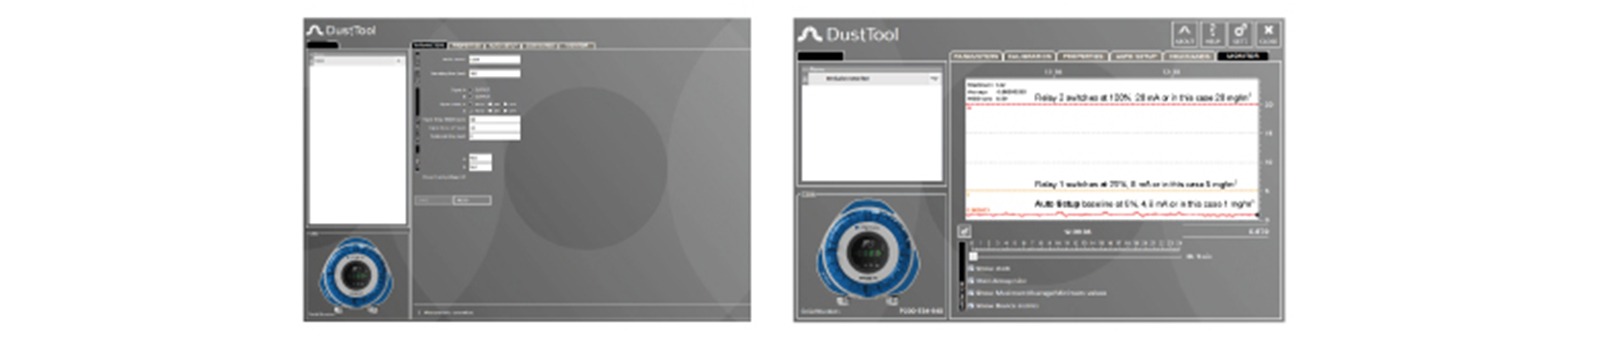 software di configurazione dusttool